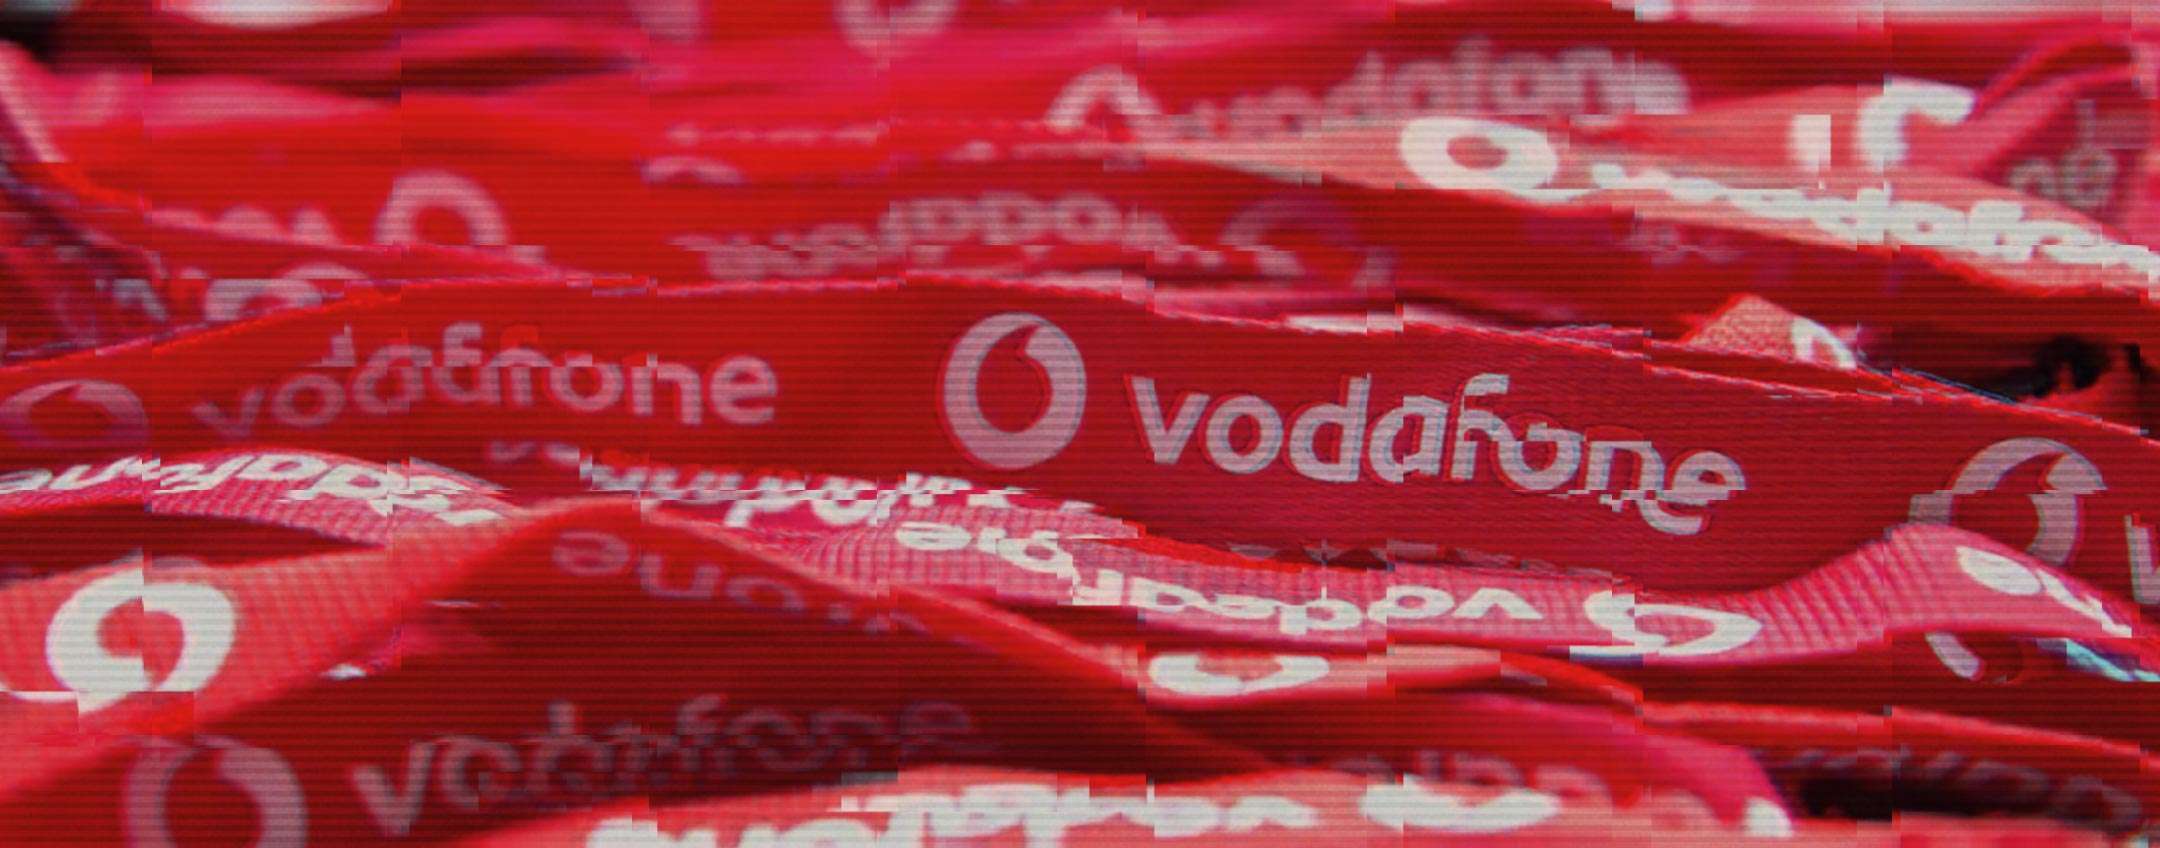 Vodafone atacada em Portugal: um desastre